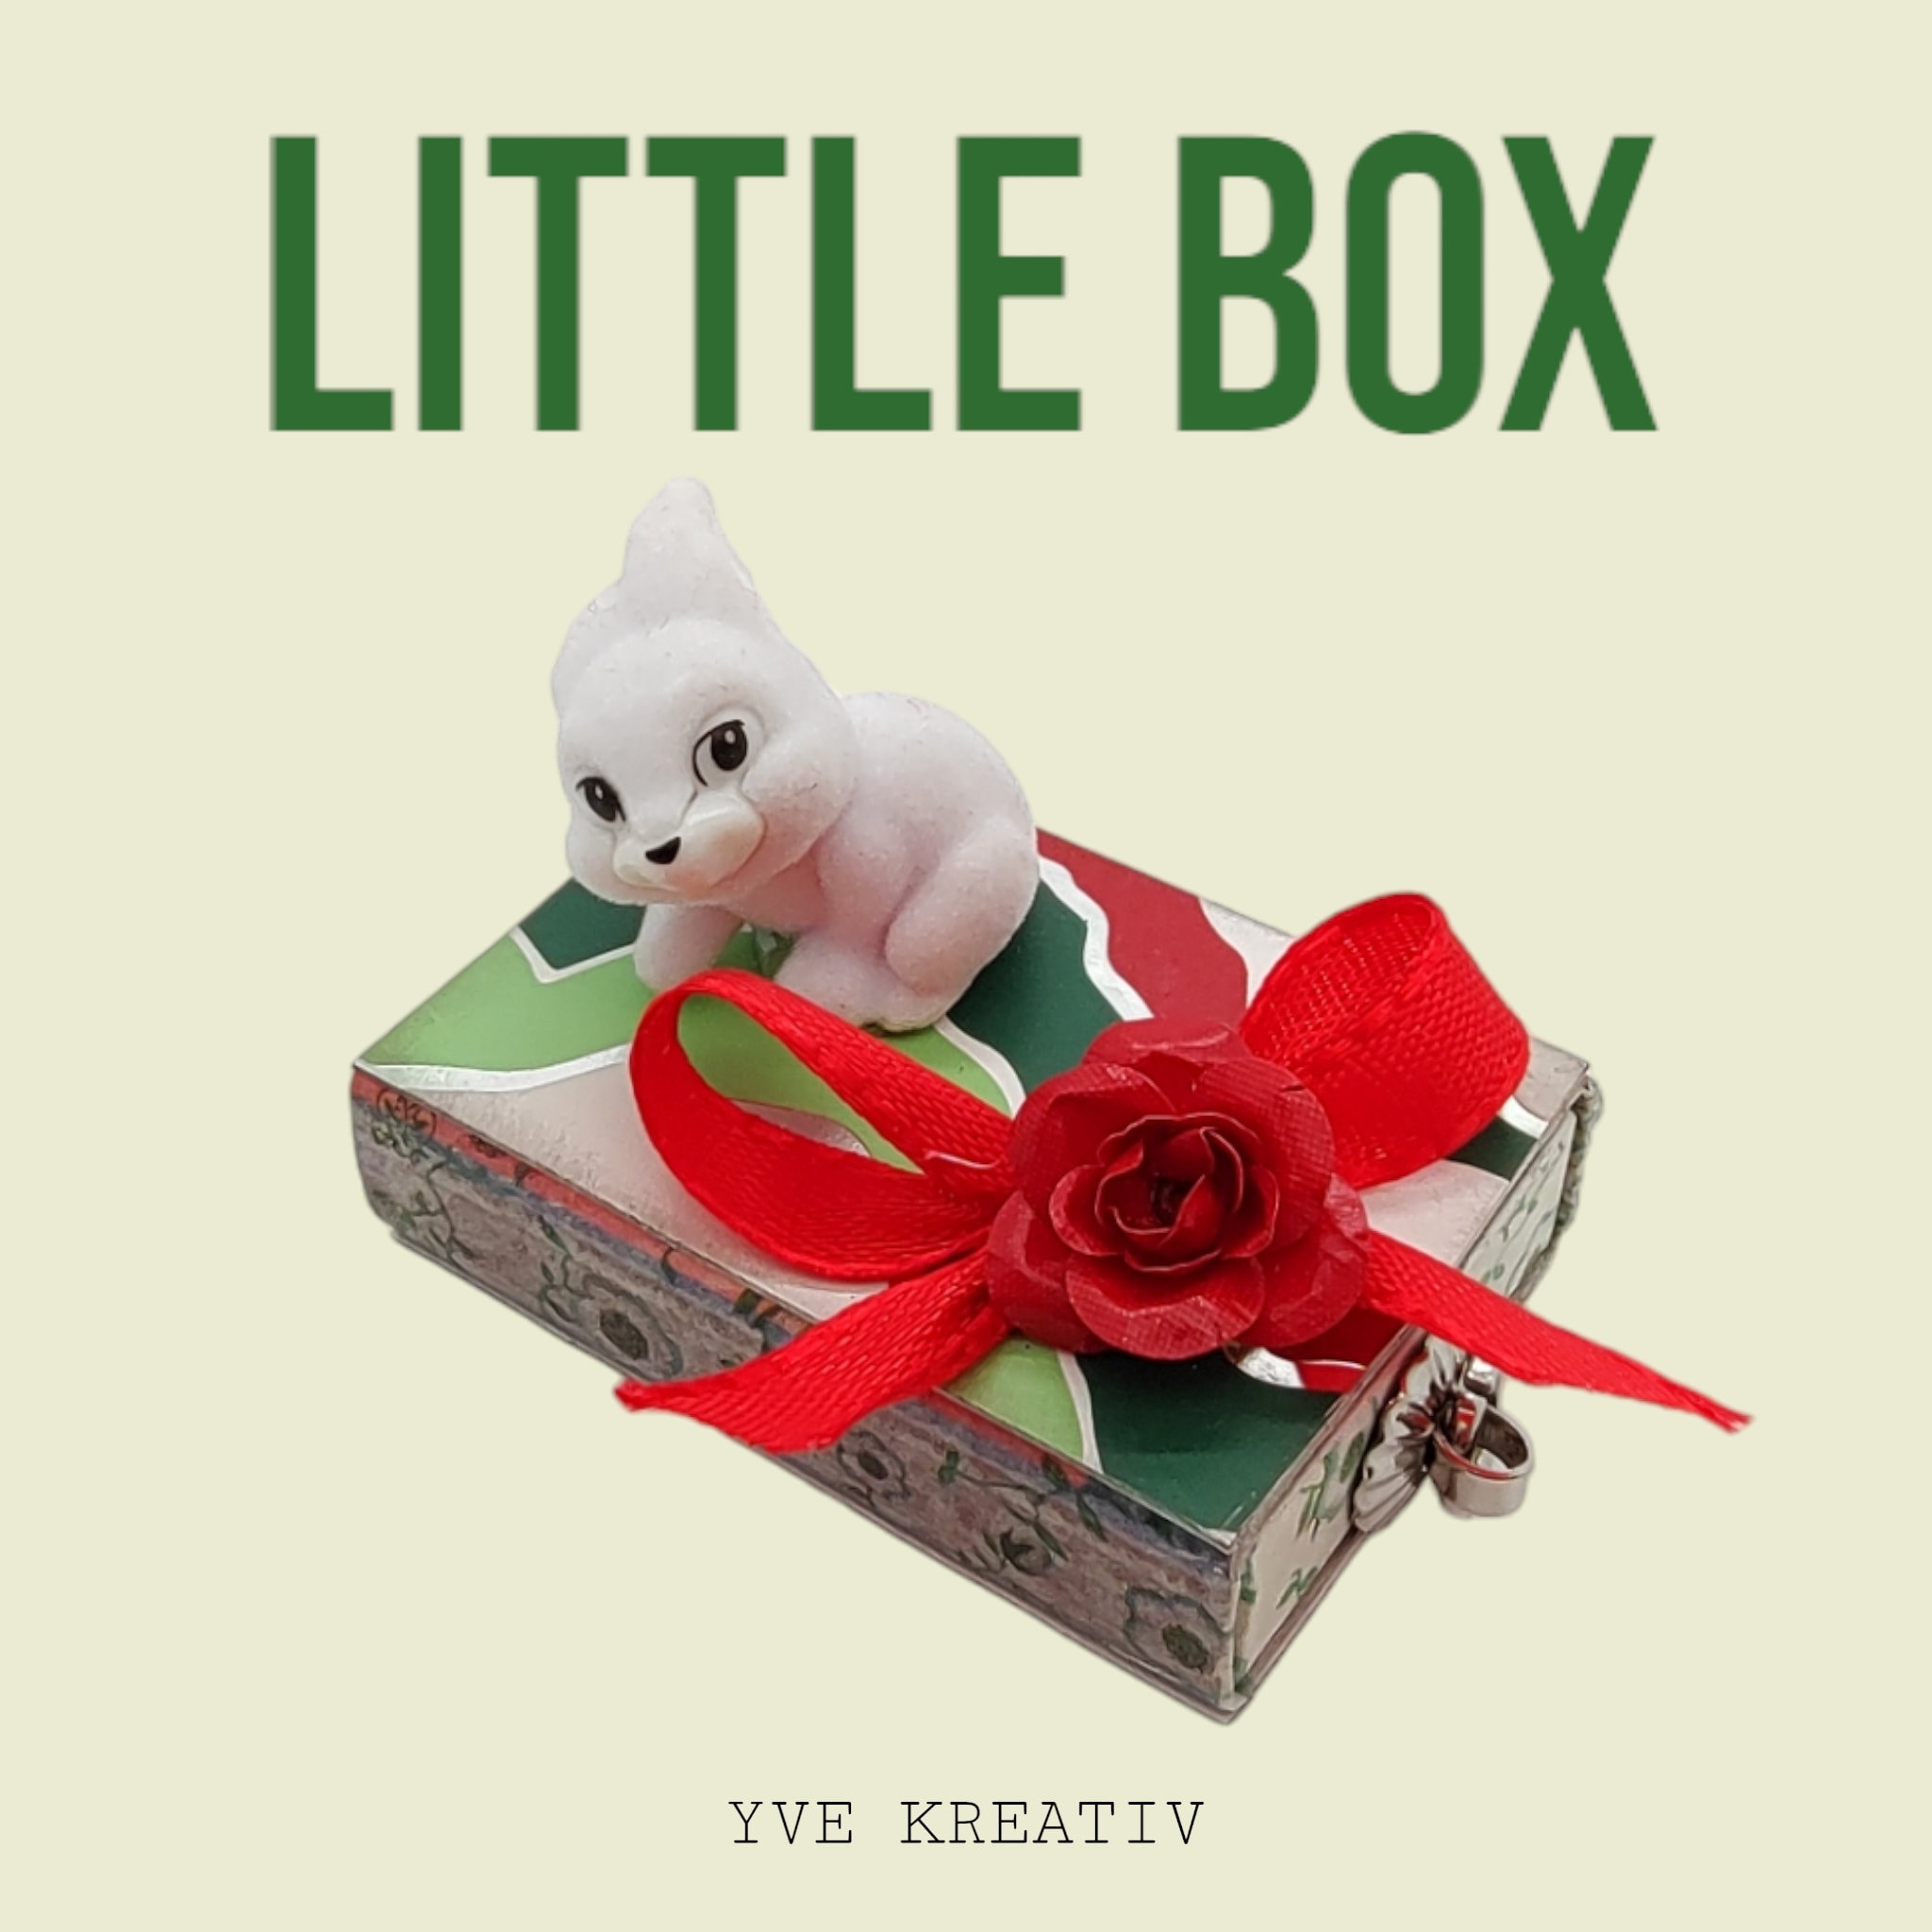 Streichholzschachtel "Oster - Hase" Geschenkebox Schachtel für Geldgeschenke Gutschein - kleine Kostbarkeiten